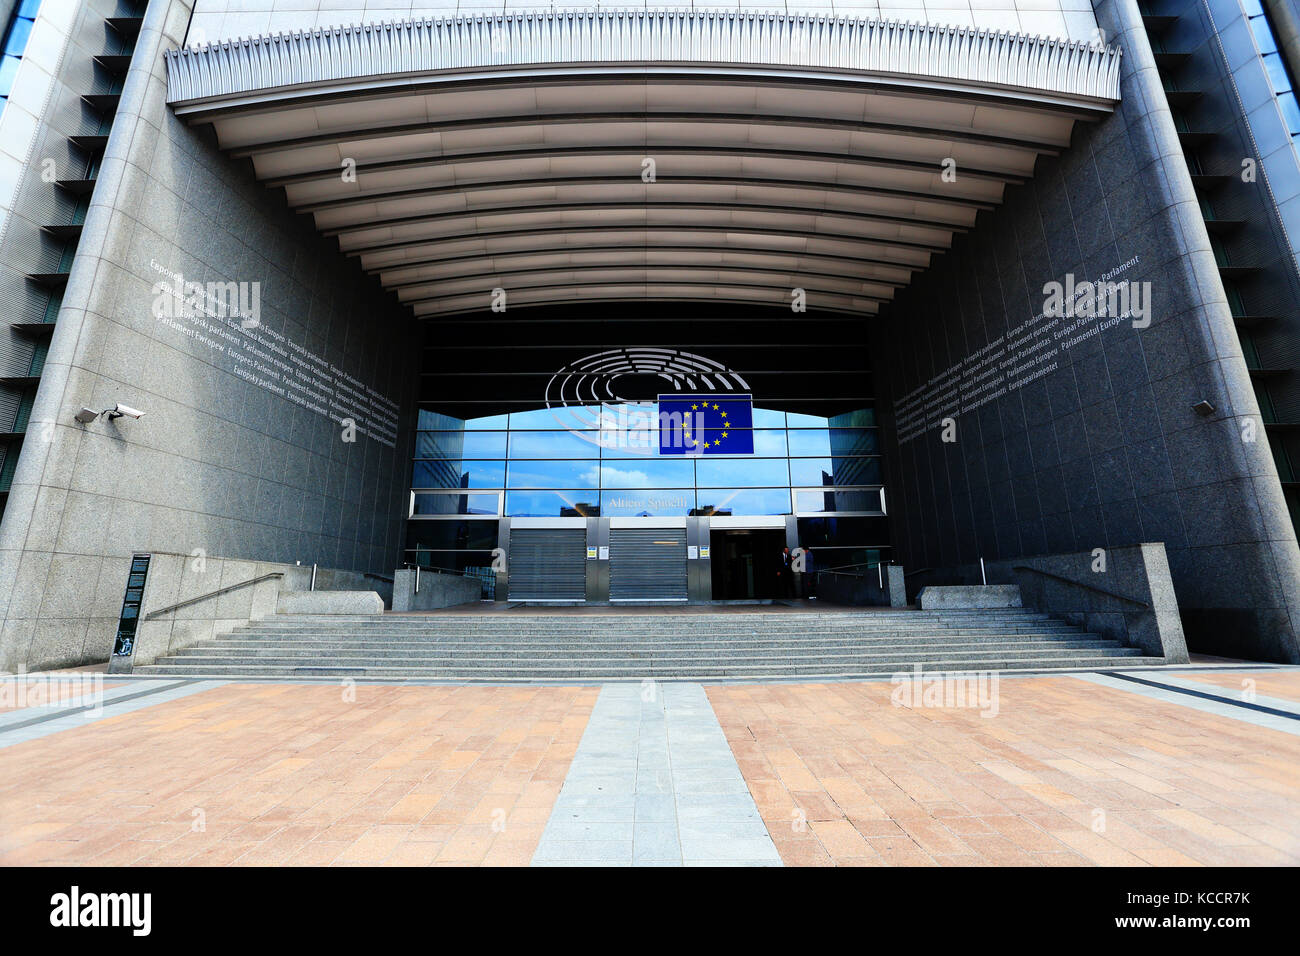 Brüssel, Belgien - 17. Juli 2017: Haupteingang des Europäischen Parlaments Gebäude. EU-Parlament Gebäude in Belgien. Stockfoto